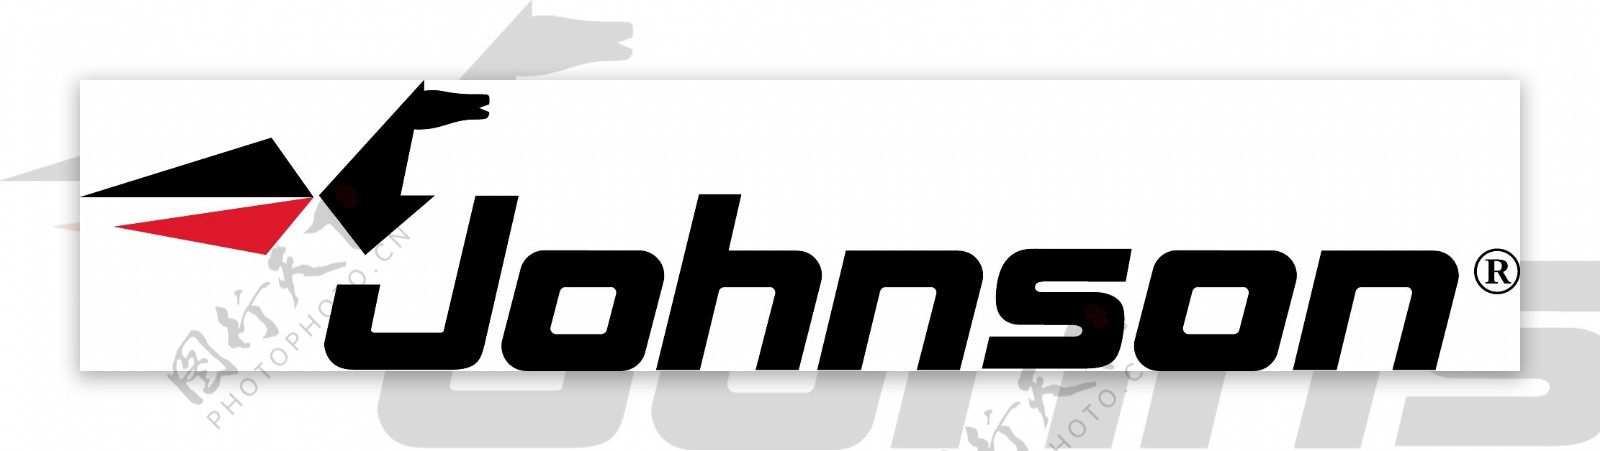 约翰逊logo2